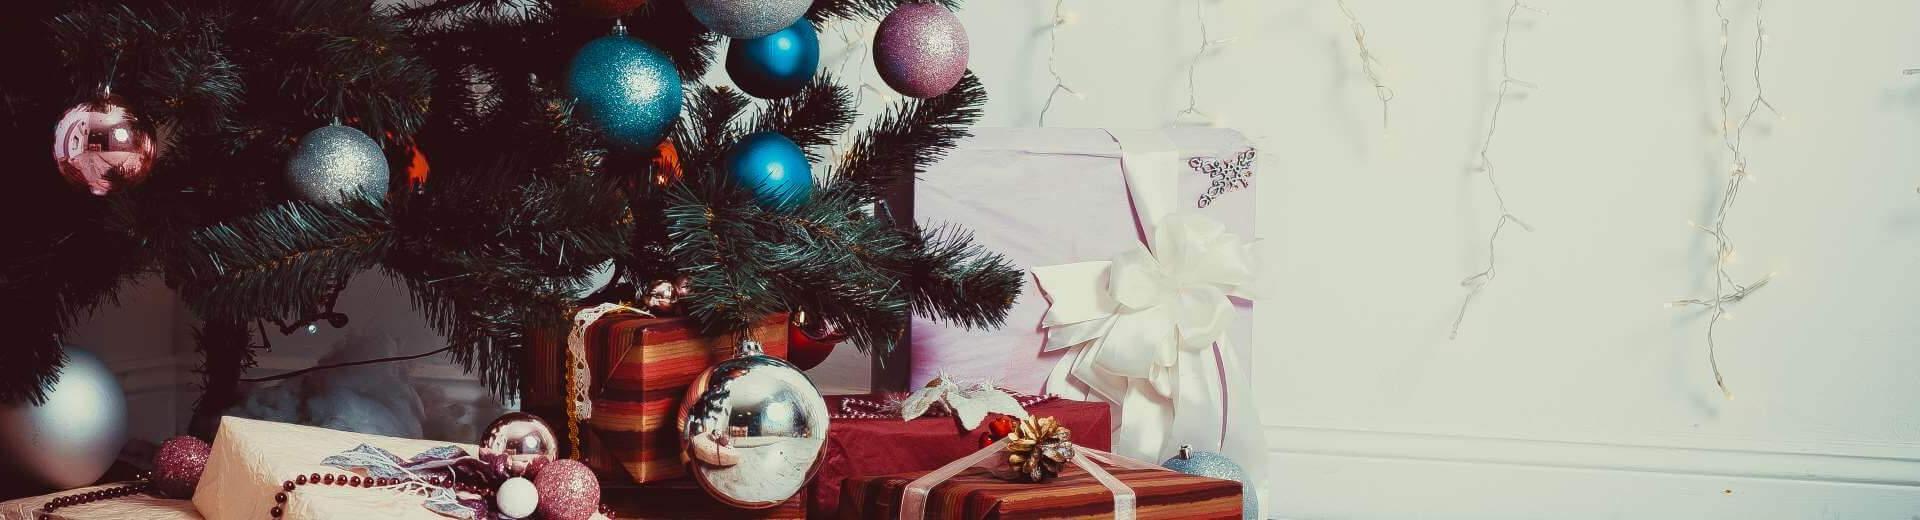 Weihnachten im Ferienhaus in Bulgarien | Casamundo - Casamundo